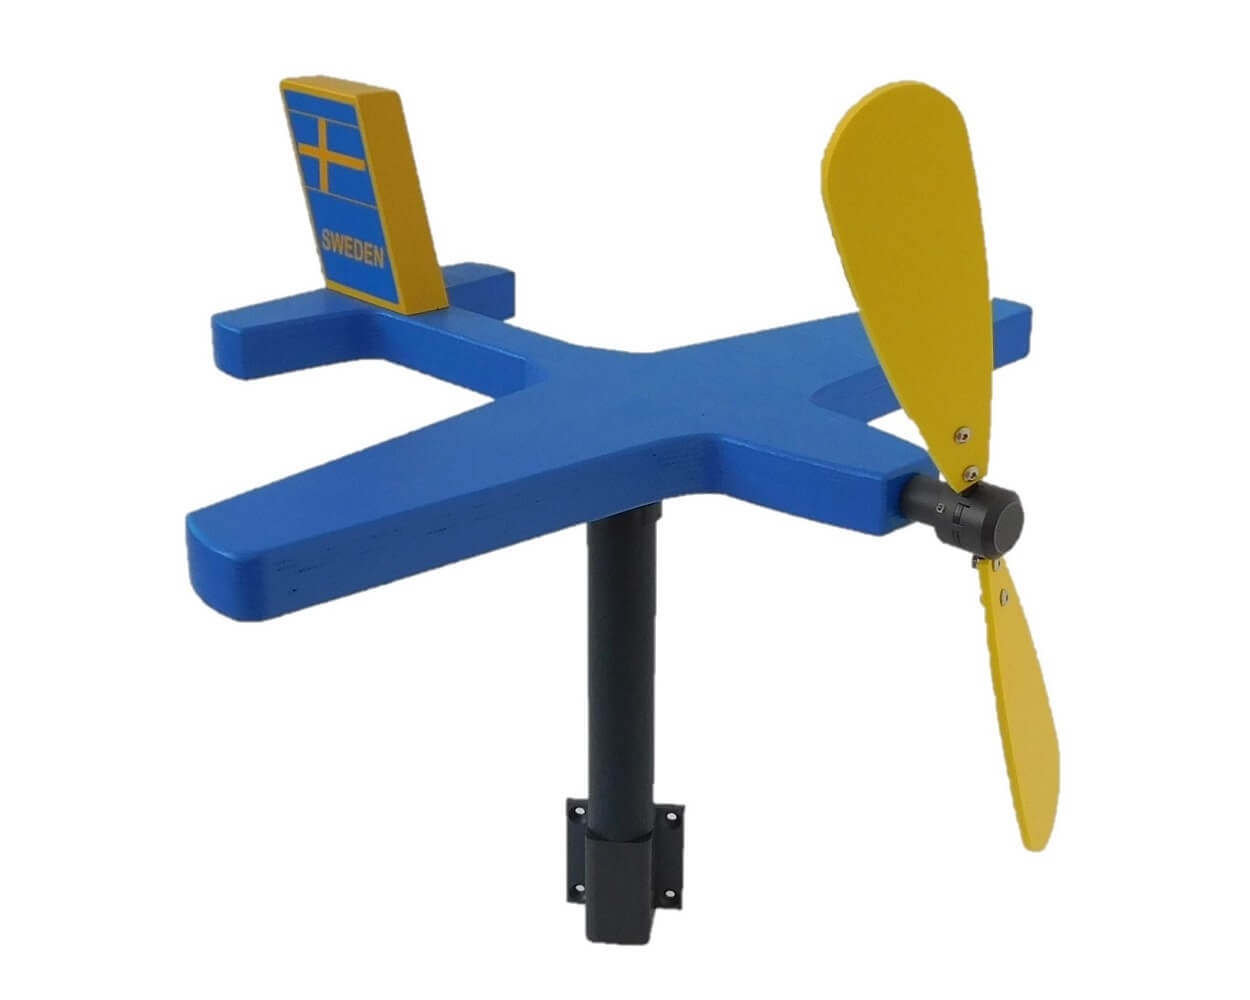 Flugzeug Windspiel / Windrad mit blauem Rumpf und gelbem Propeller. Am Leitwerk erkennt man die schwedische Fahne mit dem Schriftzug Sweden.